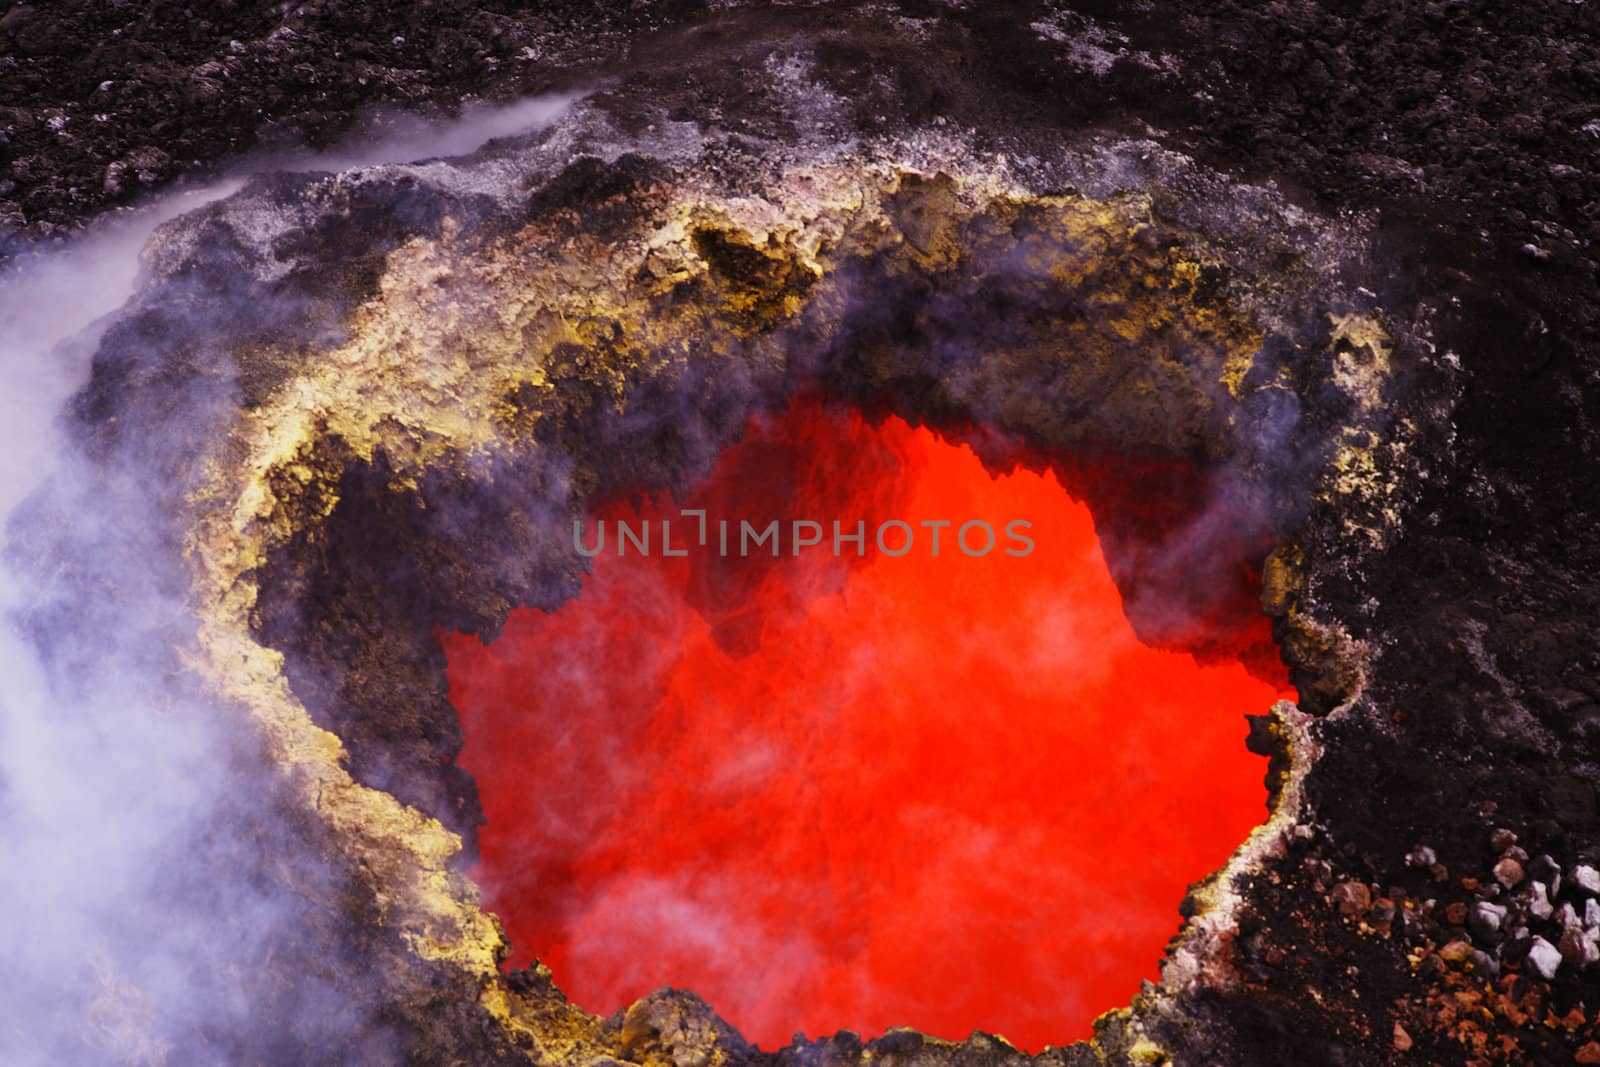 USA Hawaii Kilauea Volcano red hot lava by hotflash2001